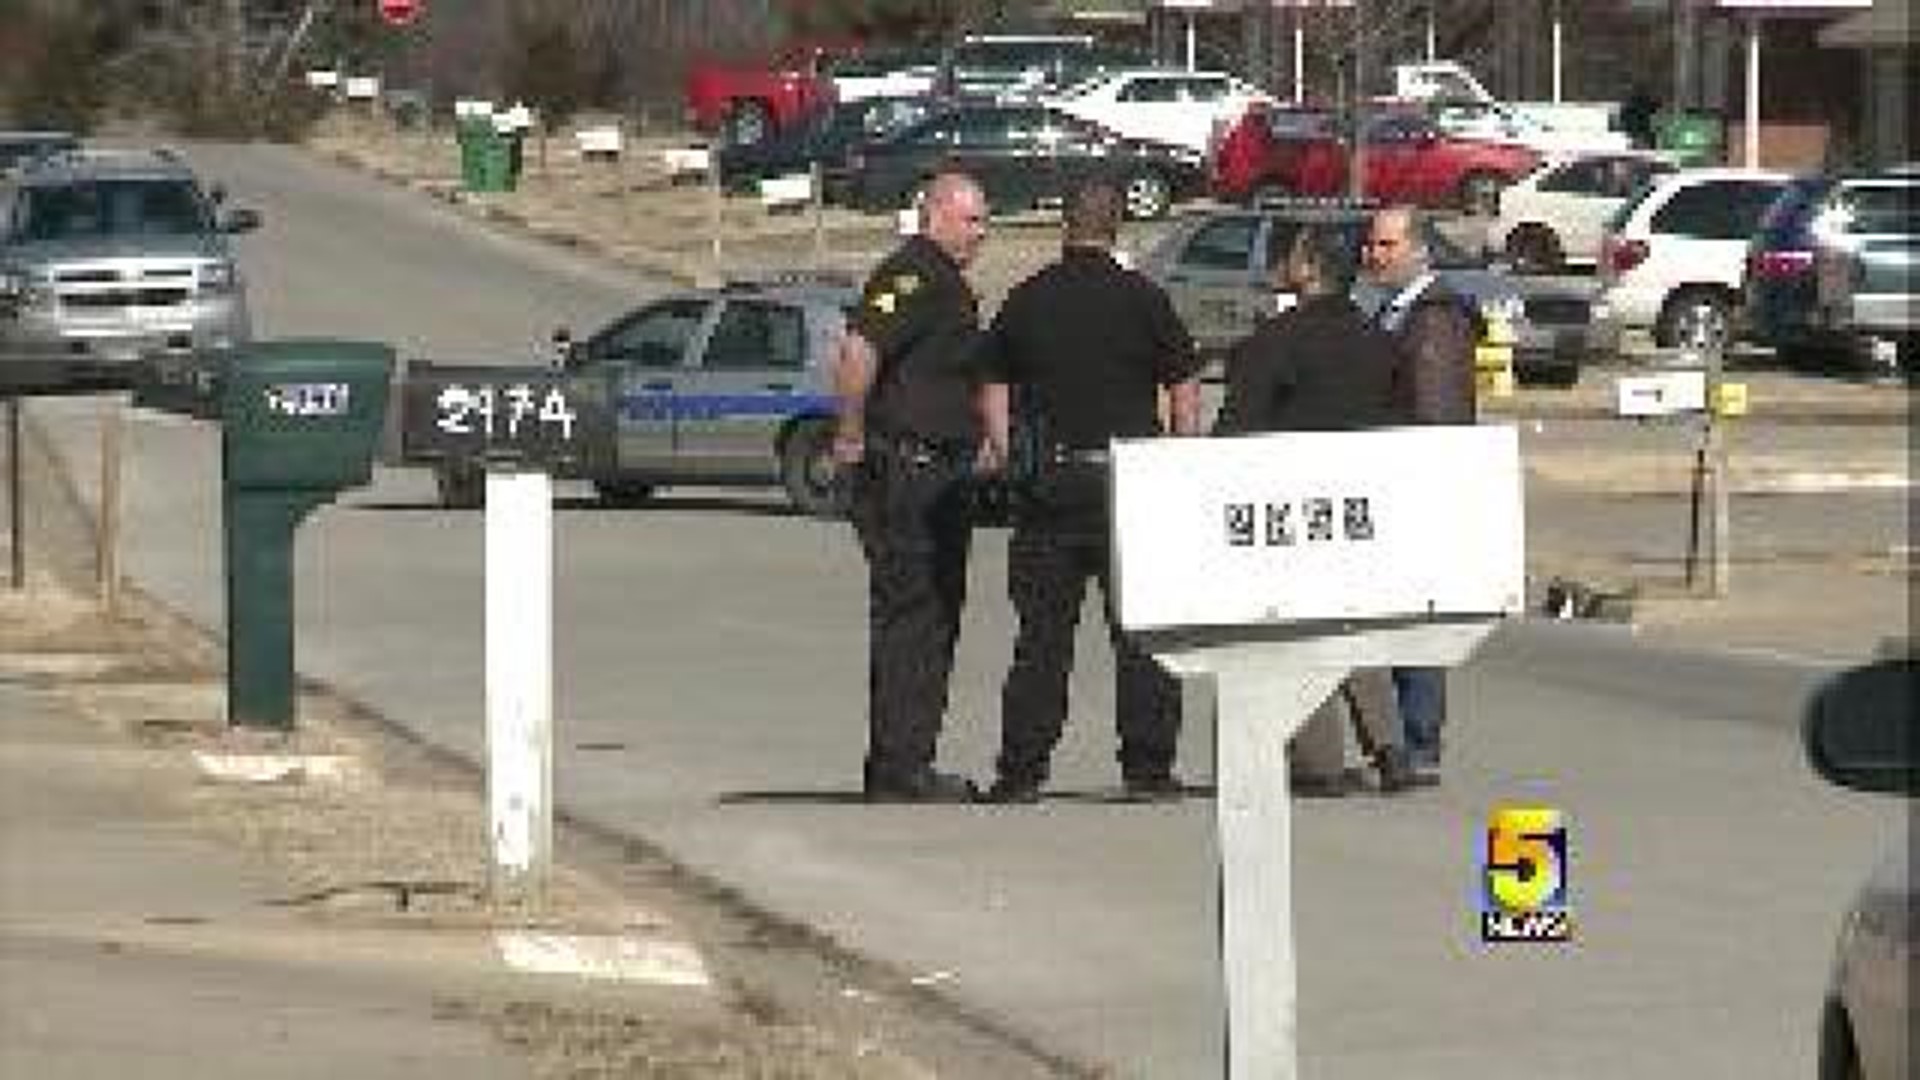 Springdale Man Arrested In SWAT Standoff